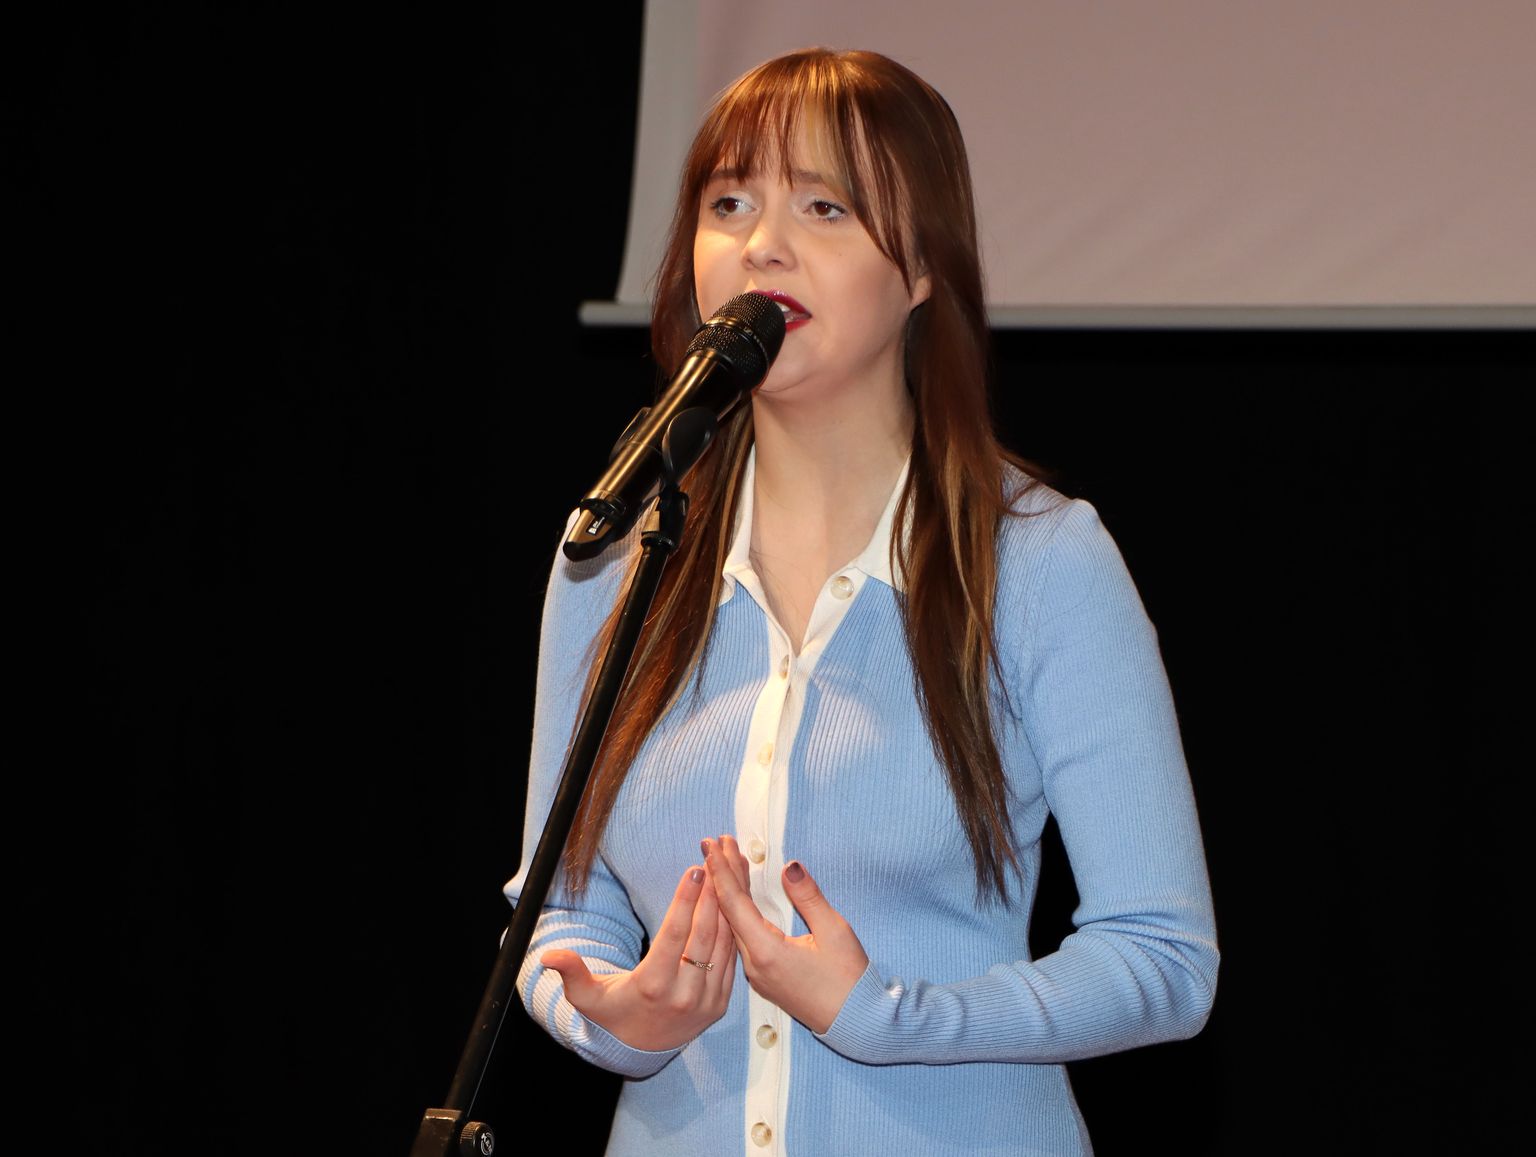 Во вторник в Йыхвиском концертном доме на церемонии награждения работников спасательной службы Алика Милова исполнила гимн Эстонии.